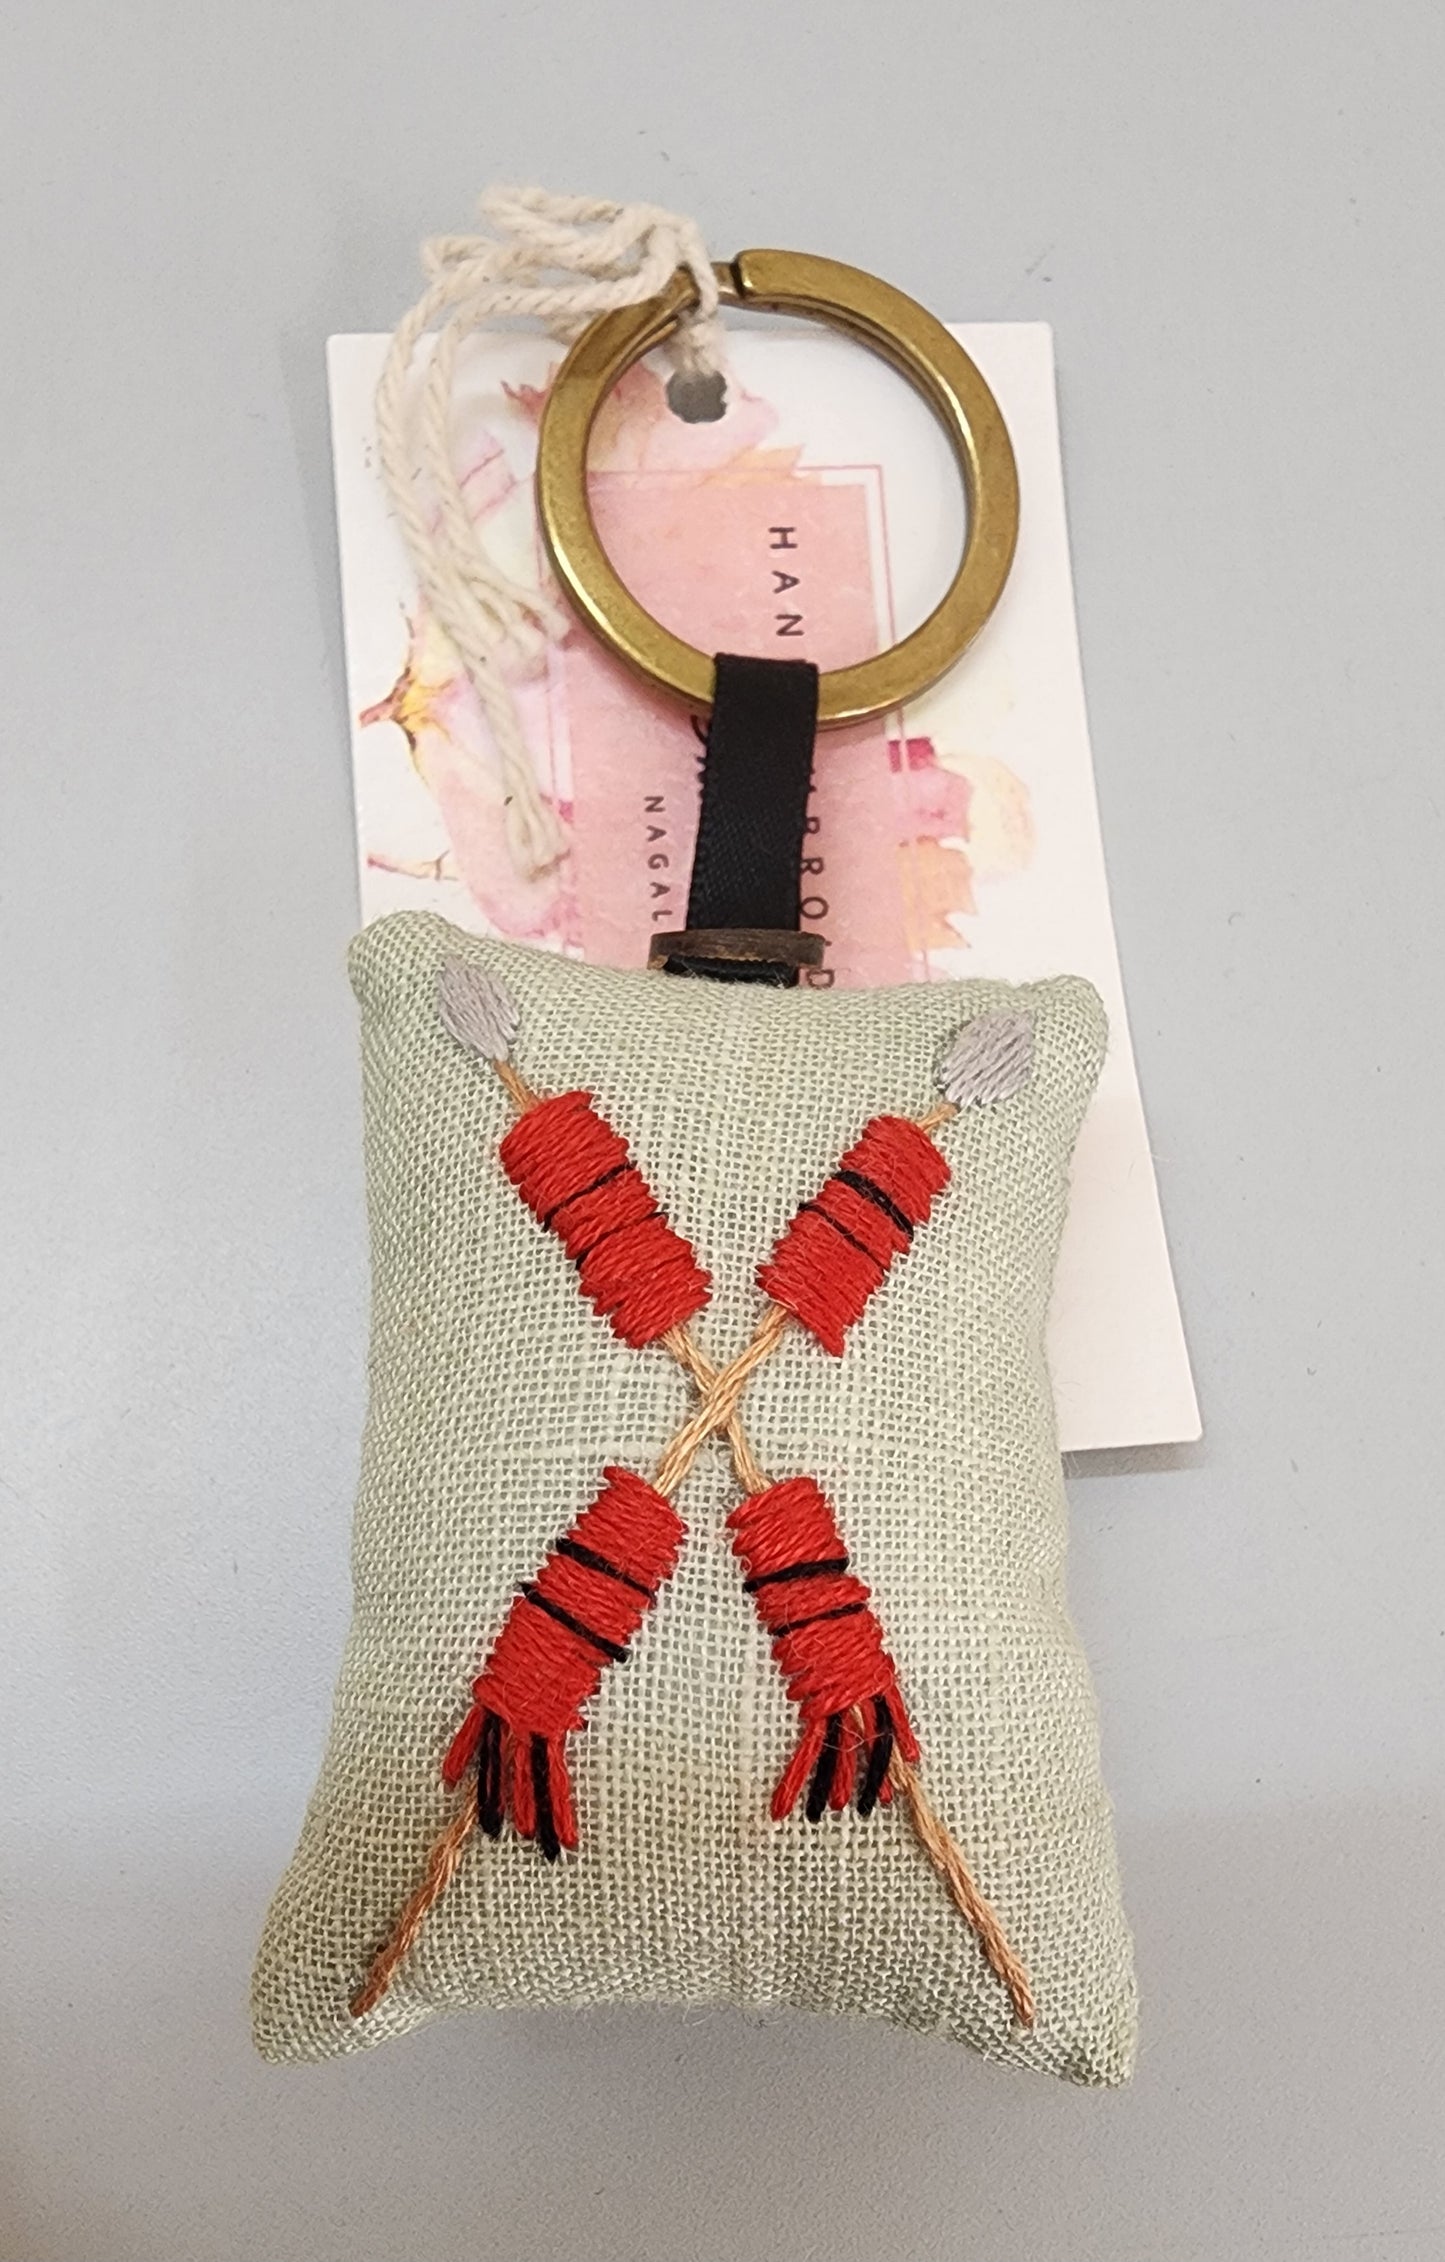 Ikali - Naga Spears - Hand-embroidered Keychain